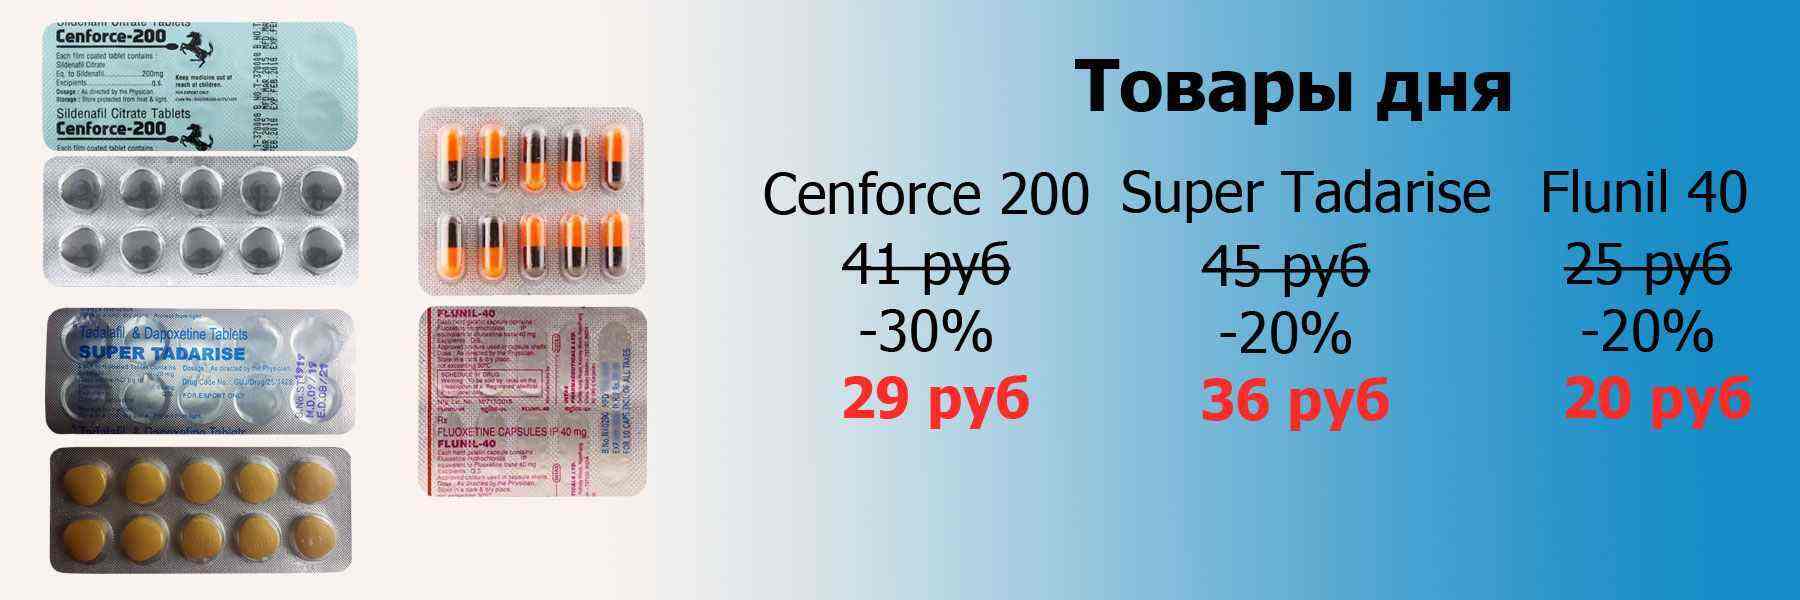 cenforce-200-super-tadarise-flunil-40.jpg